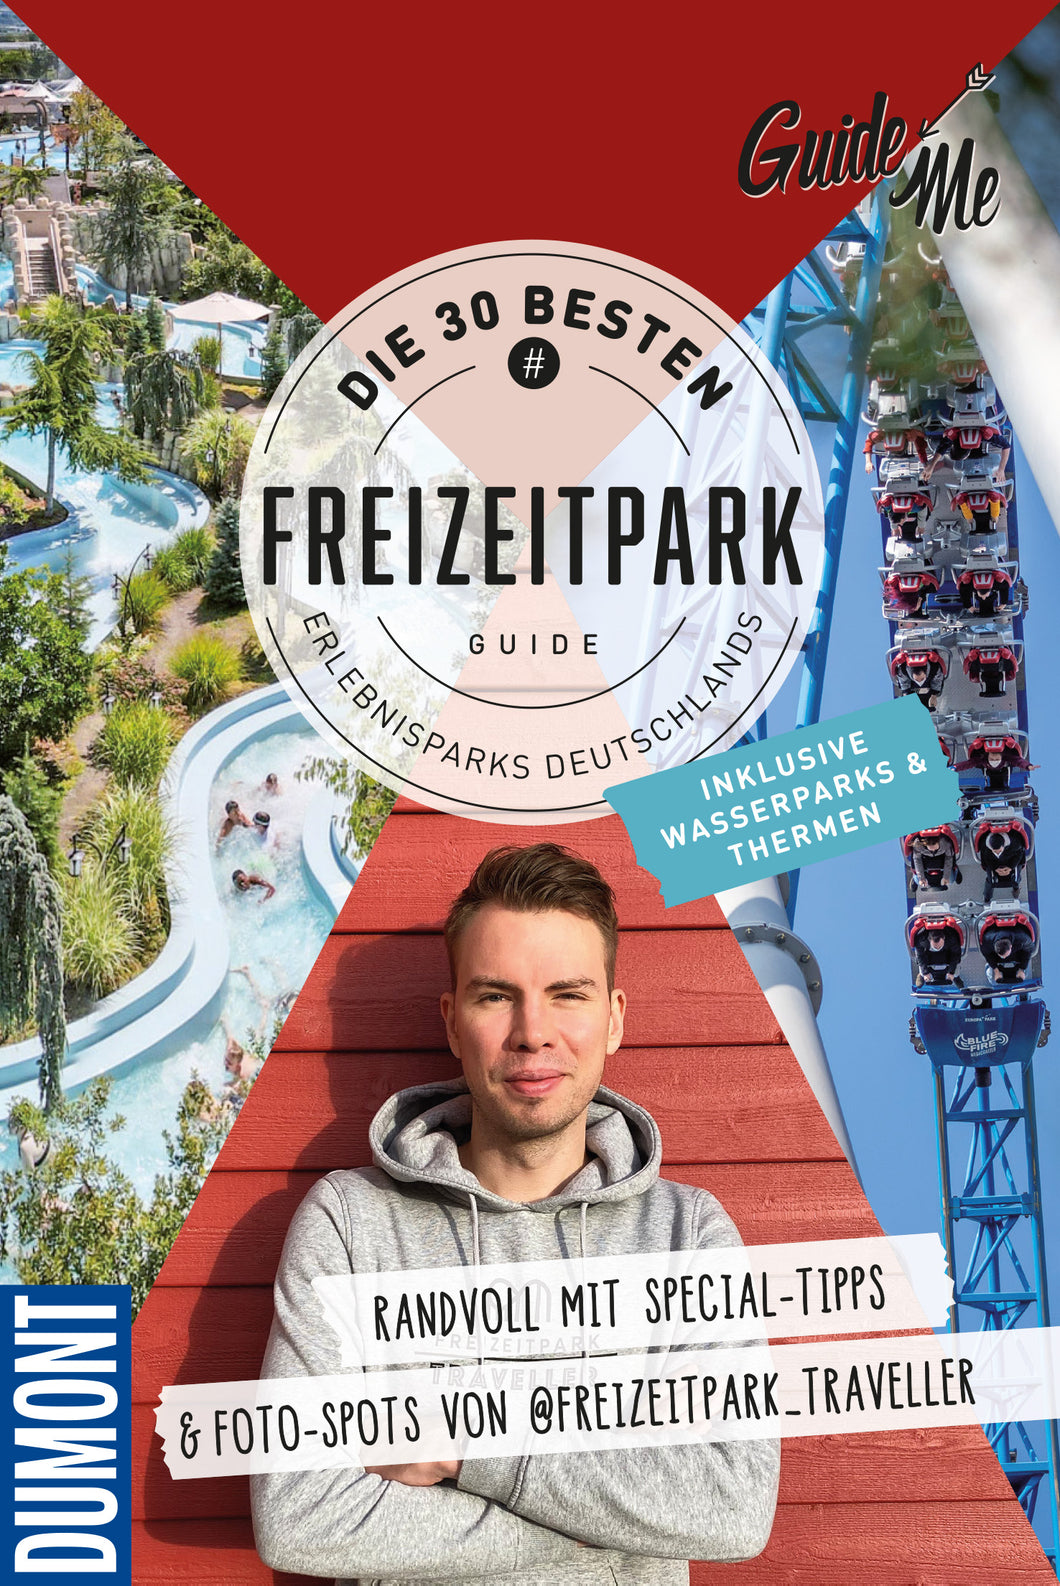 Freizeitpark Guide - DIE 30 BESTEN ERLEBNISPARKS DEUTSCHLANDS